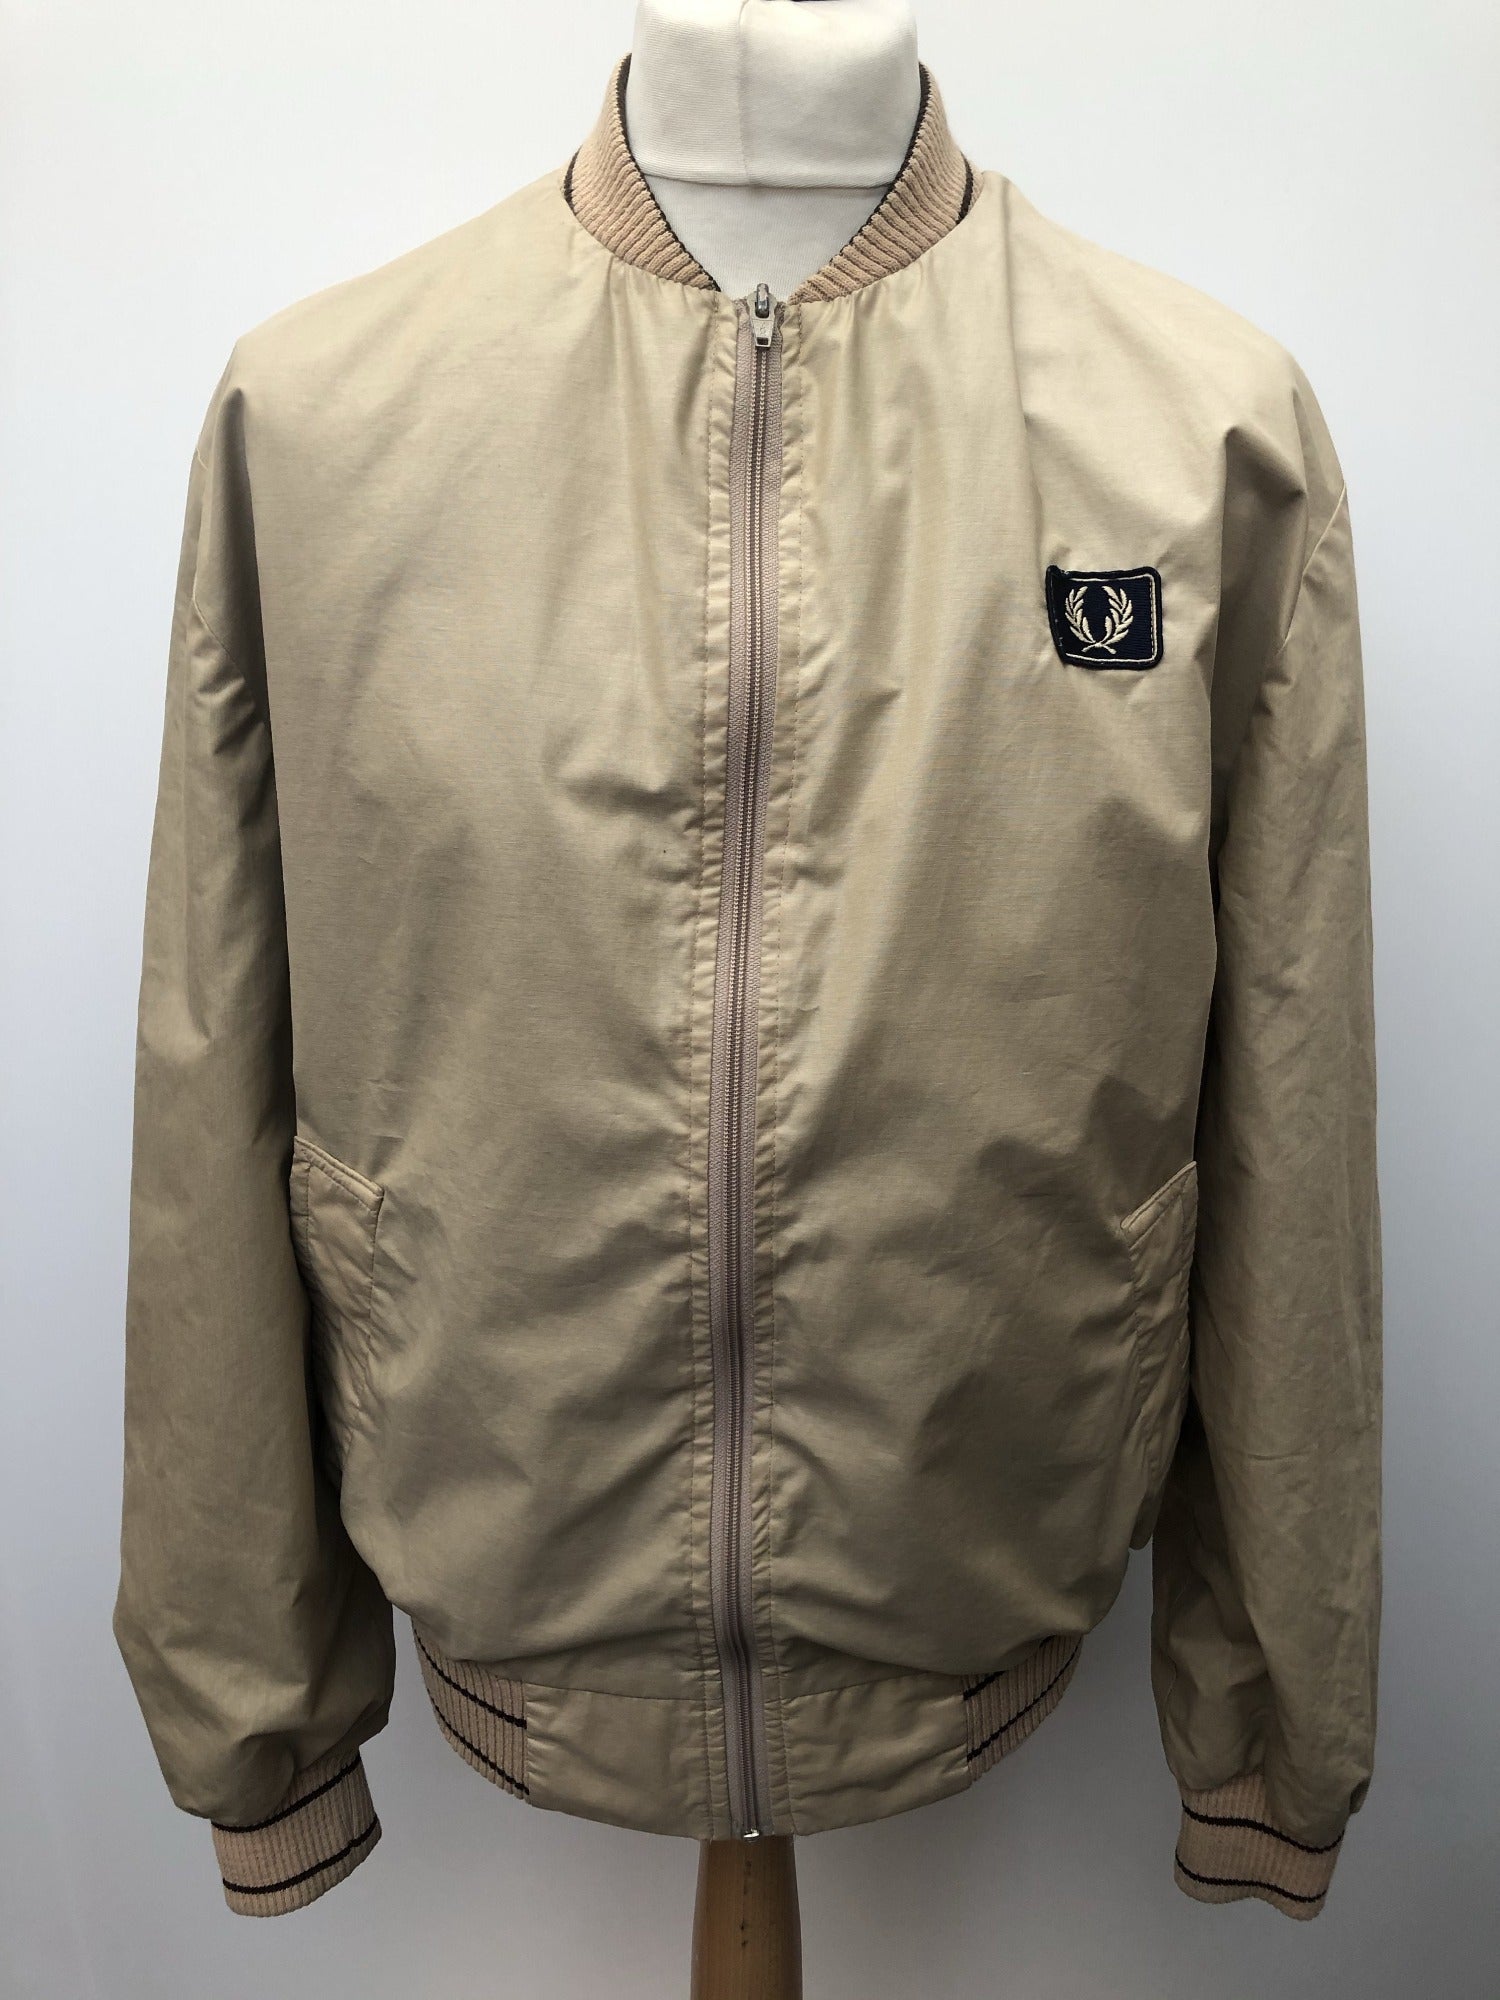 Fred Perry Sportswear Bomber Jacket - Beige - Size L - Urban Village ...